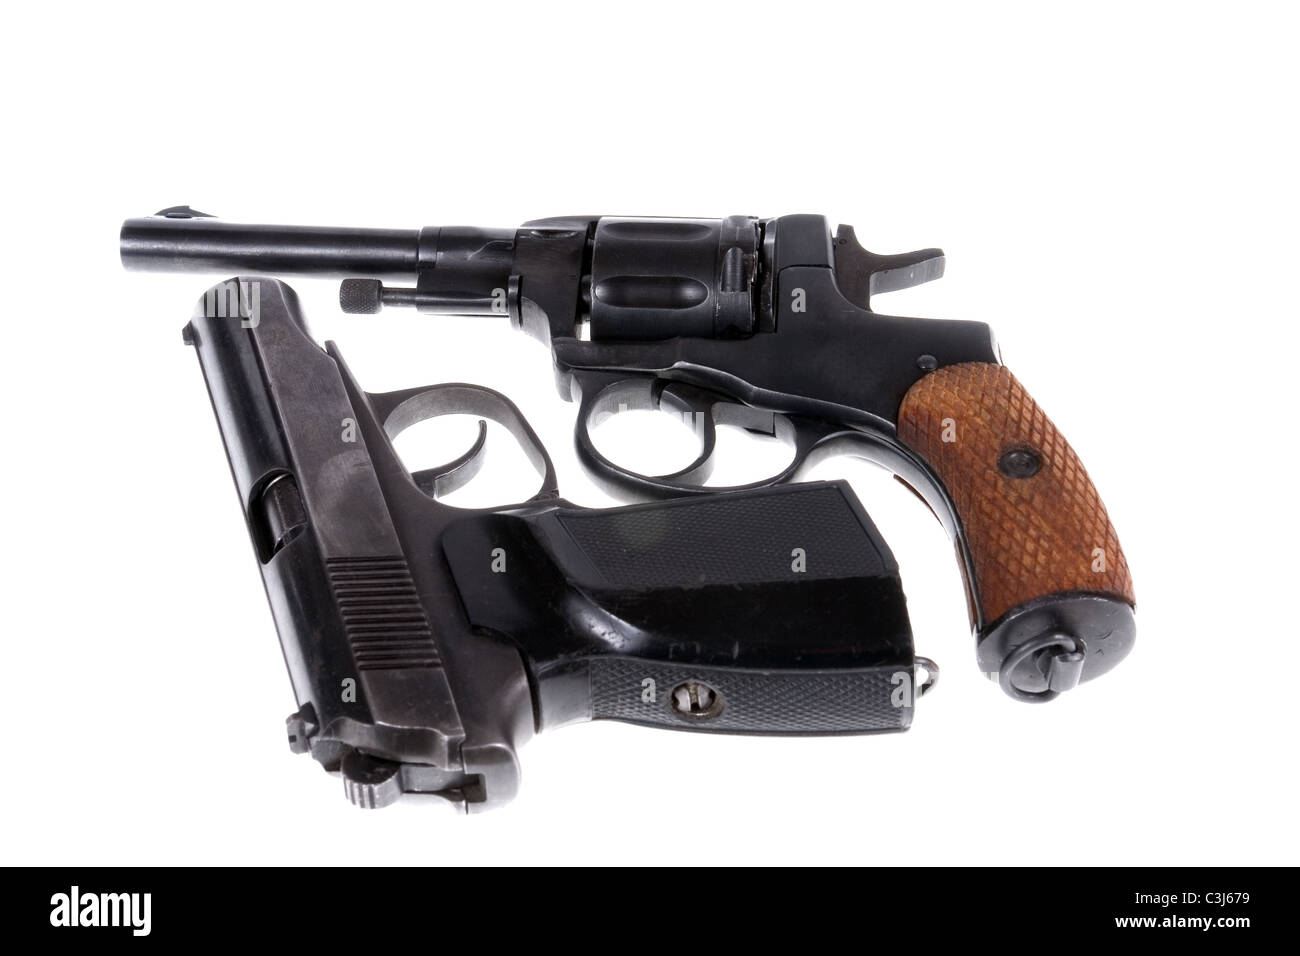 pistols isolated on white background Stock Photo